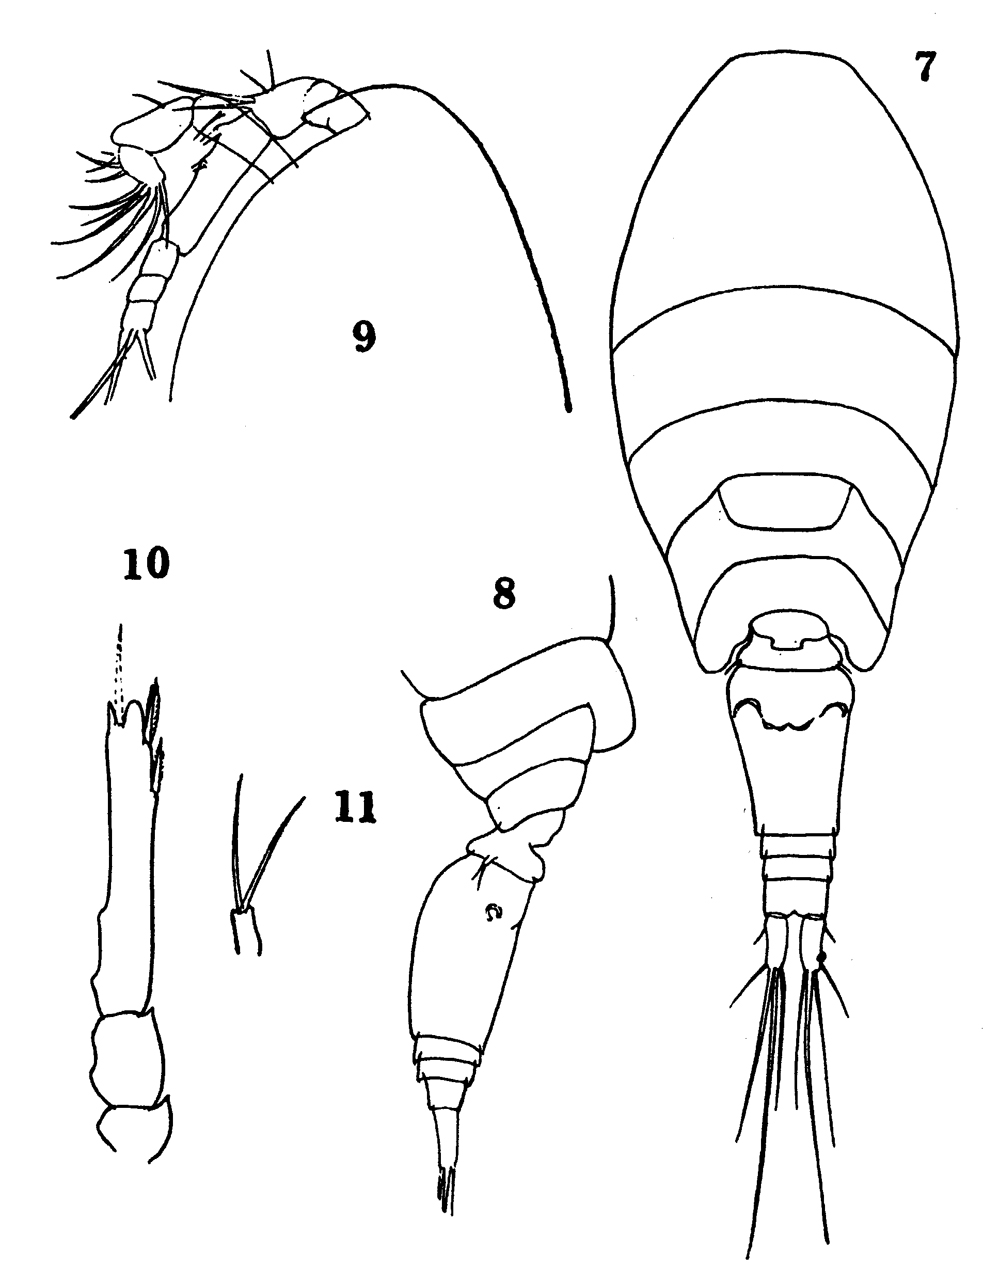 Espce Oncaea clevei - Planche 11 de figures morphologiques